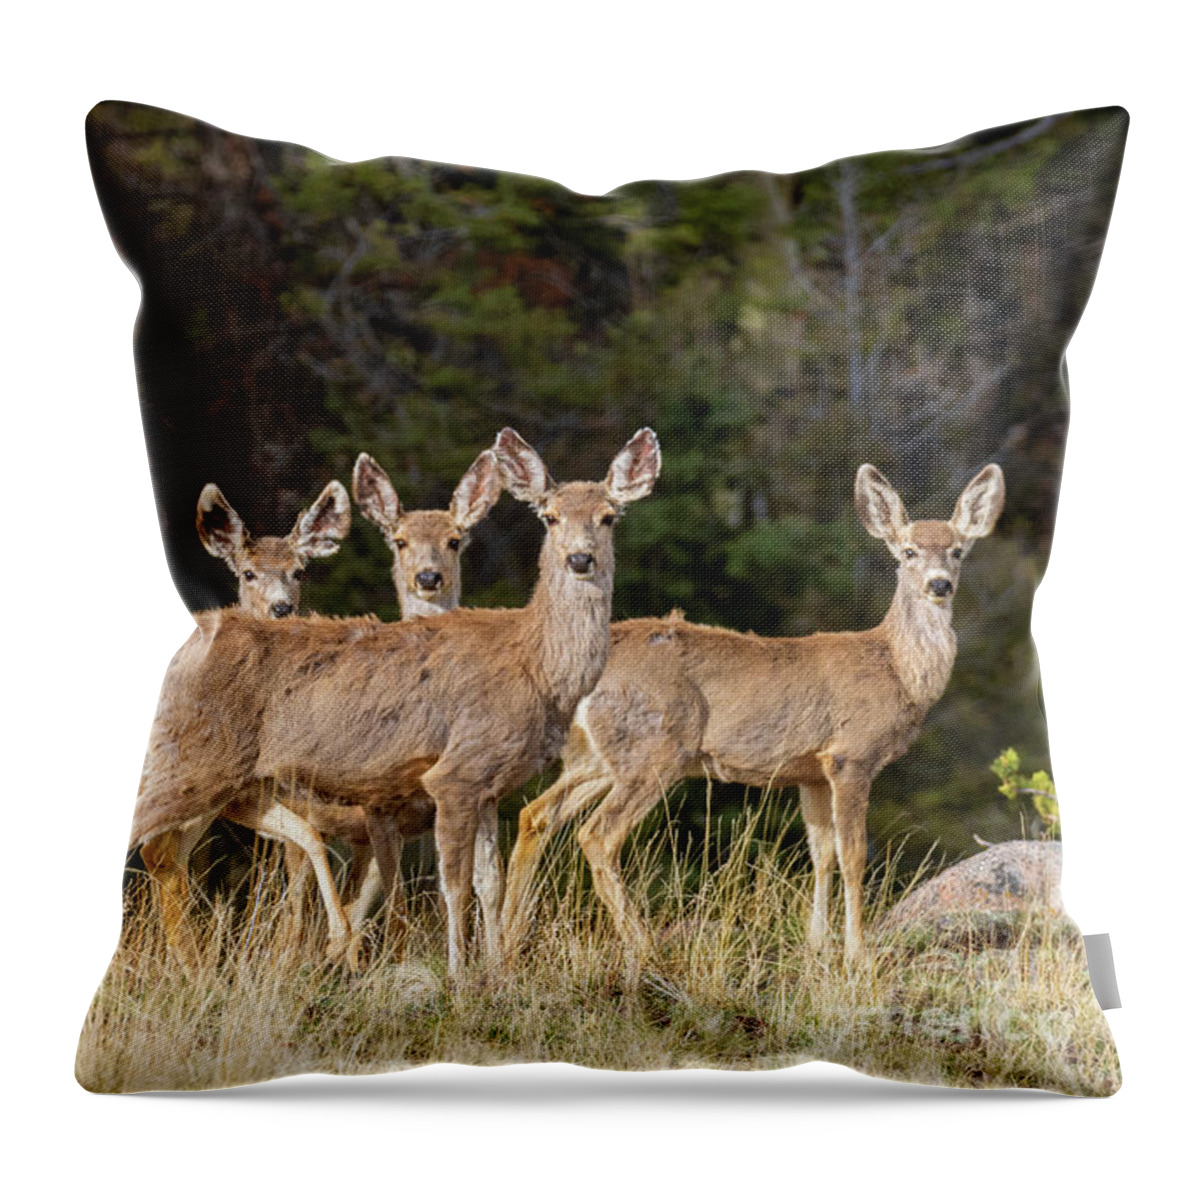 Deer Throw Pillow featuring the photograph Herd of Curious Deer by Steven Krull